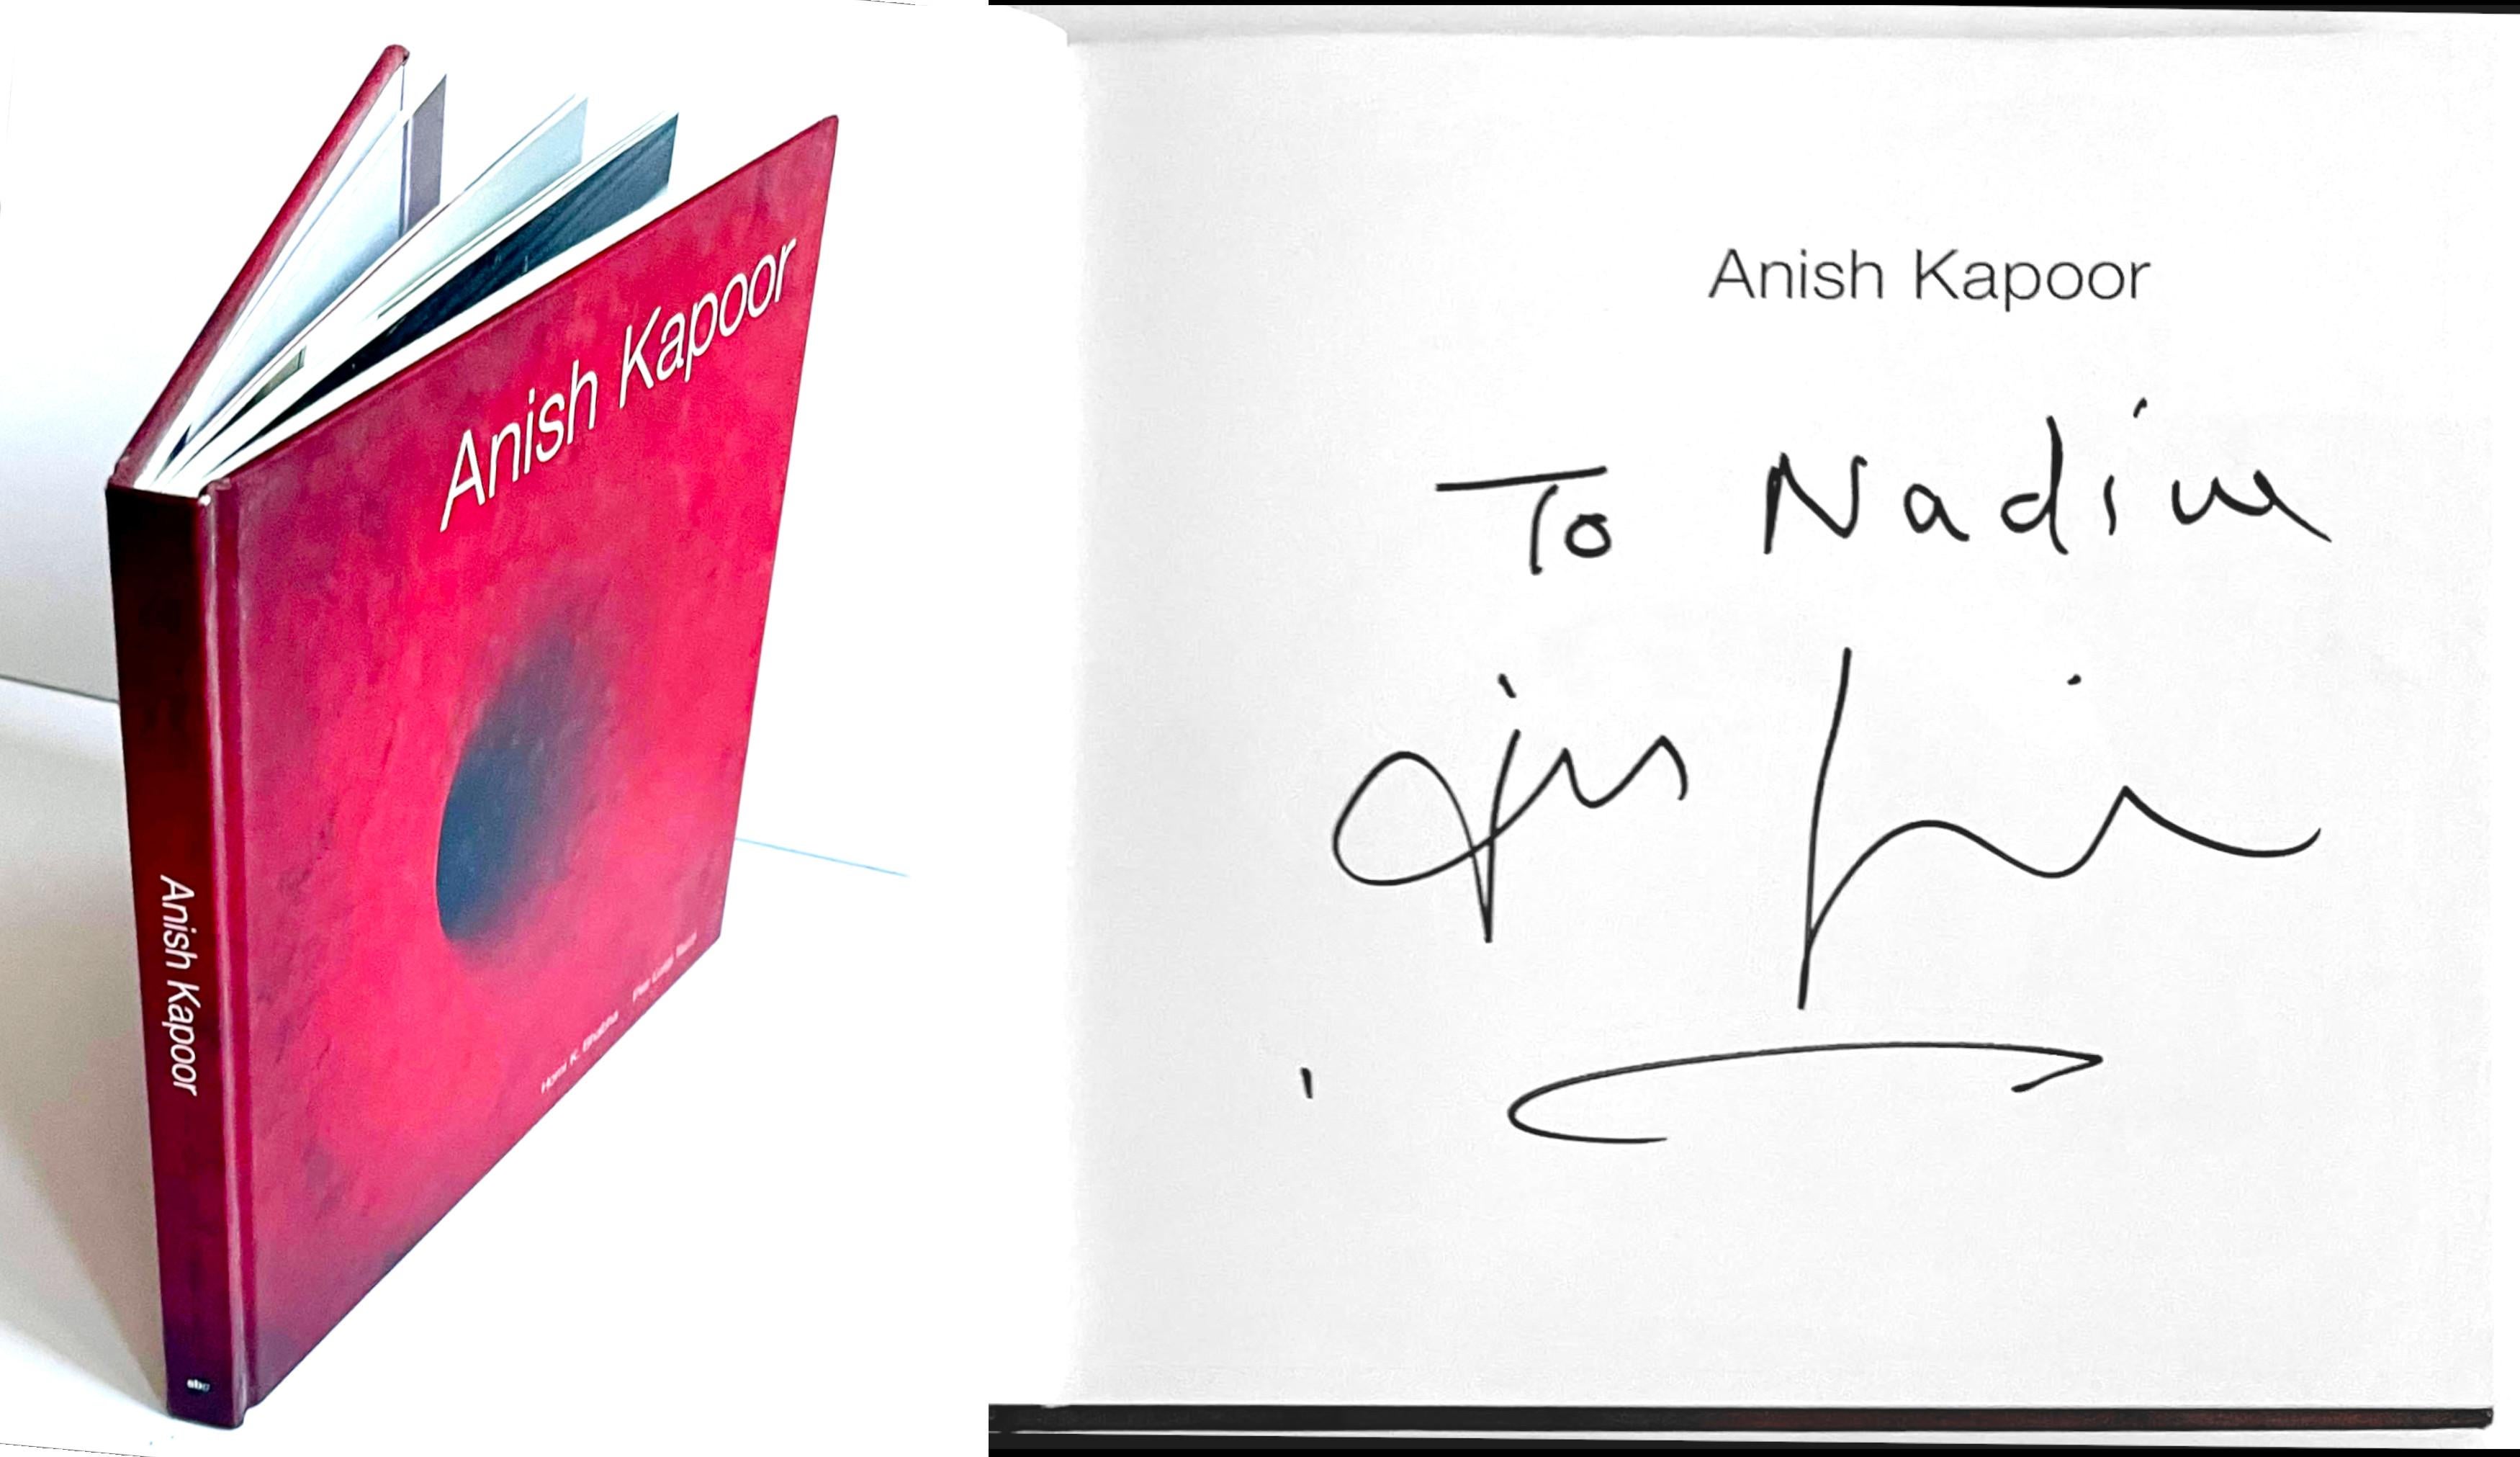 Anish Kapoor
Anish Kapoor (signé à la main et dédicacé à Nadine par Anish Kapoor), 1998
Monographie reliée (signée et dédicacée à Nadine par Anish Kapoor) 
Signé à la main par Anish Kapoor et inscrit au nom du propriétaire actuel.
8 3/4 × 8 3/4 ×